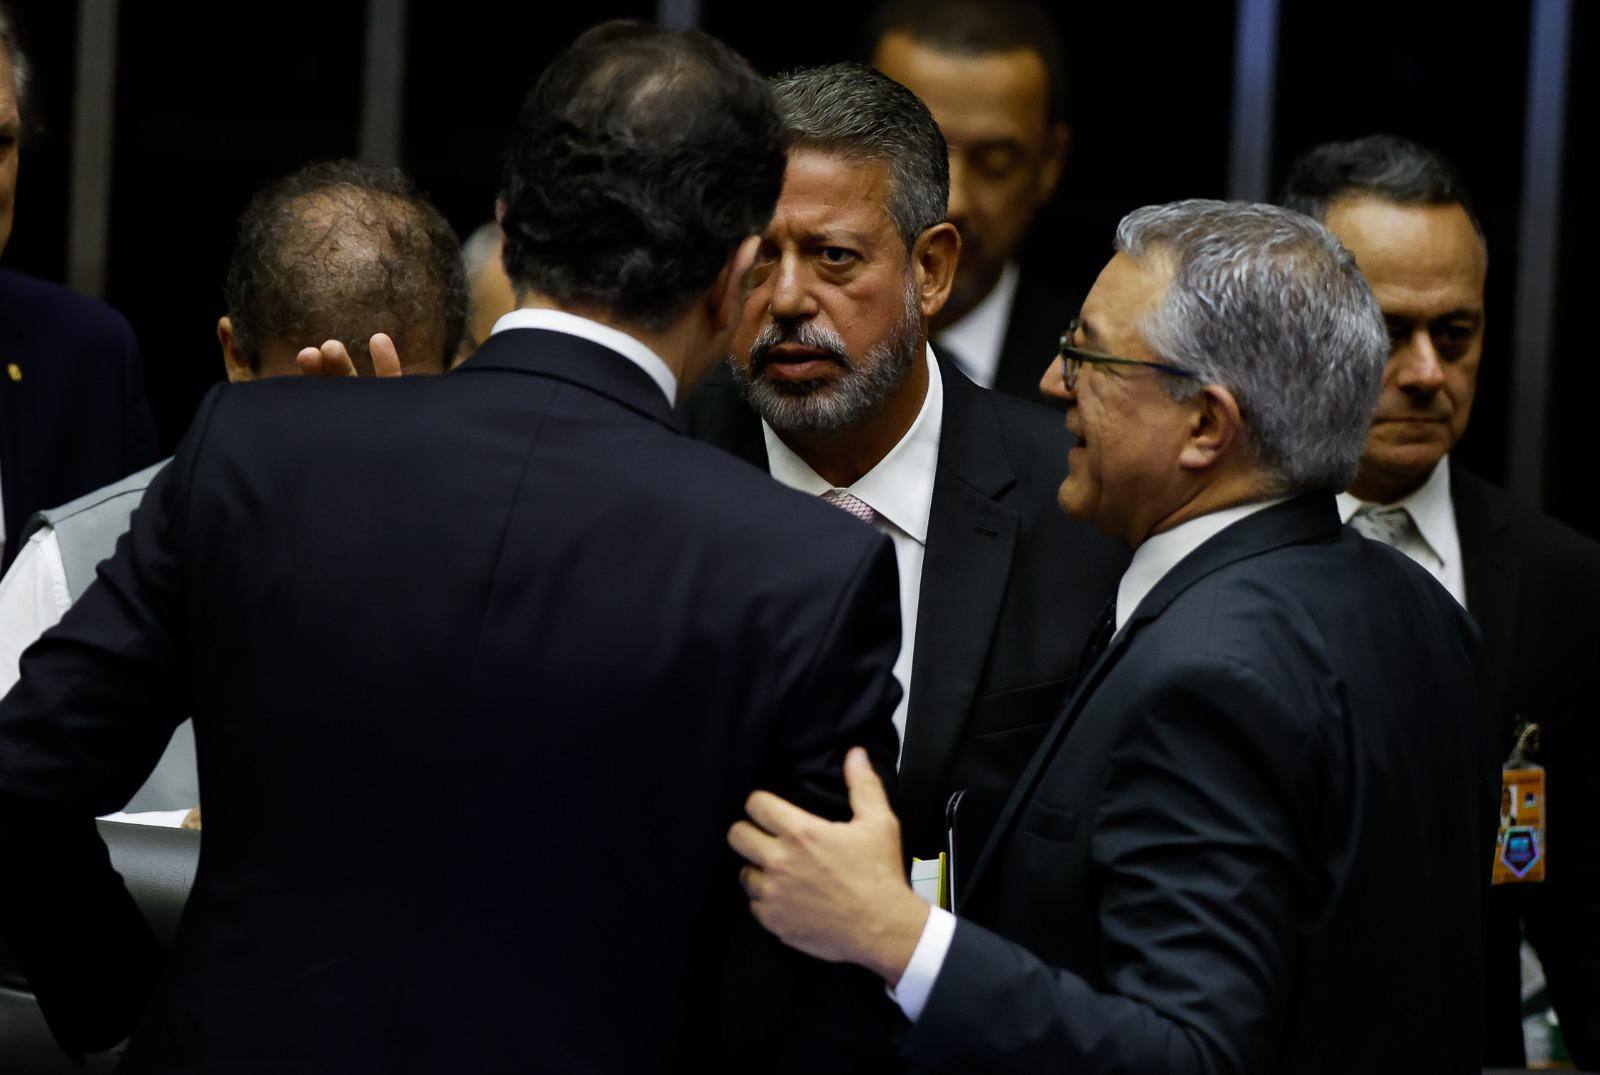 O presidente da Câmara dos Deputados, Arthur Lira, e o ministros de Relações Institucionais, Alexandre Padilha, participam da solenidade no Congresso Nacional